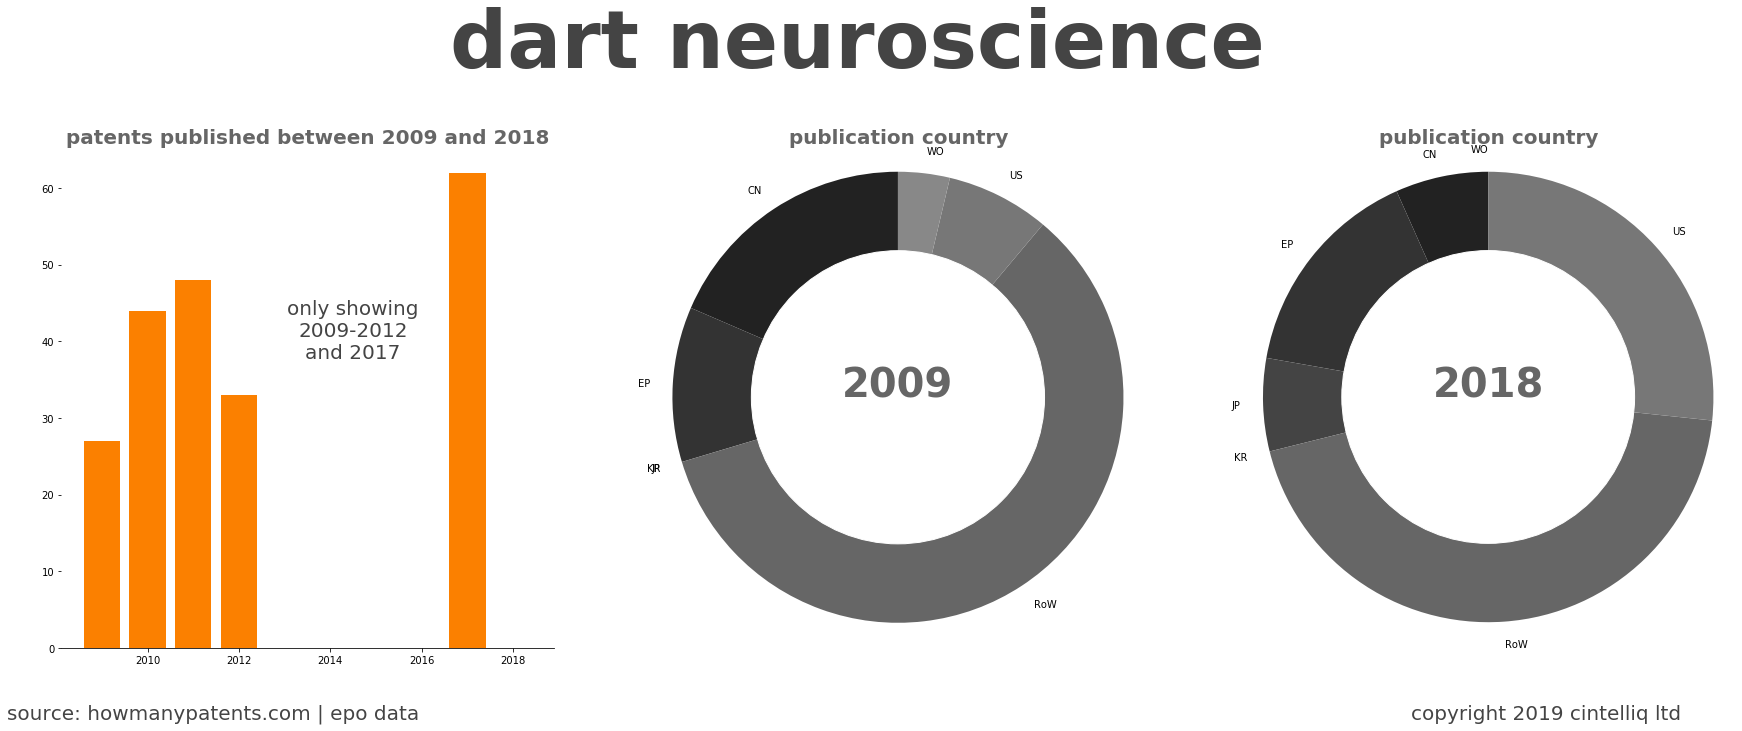 summary of patents for Dart Neuroscience 